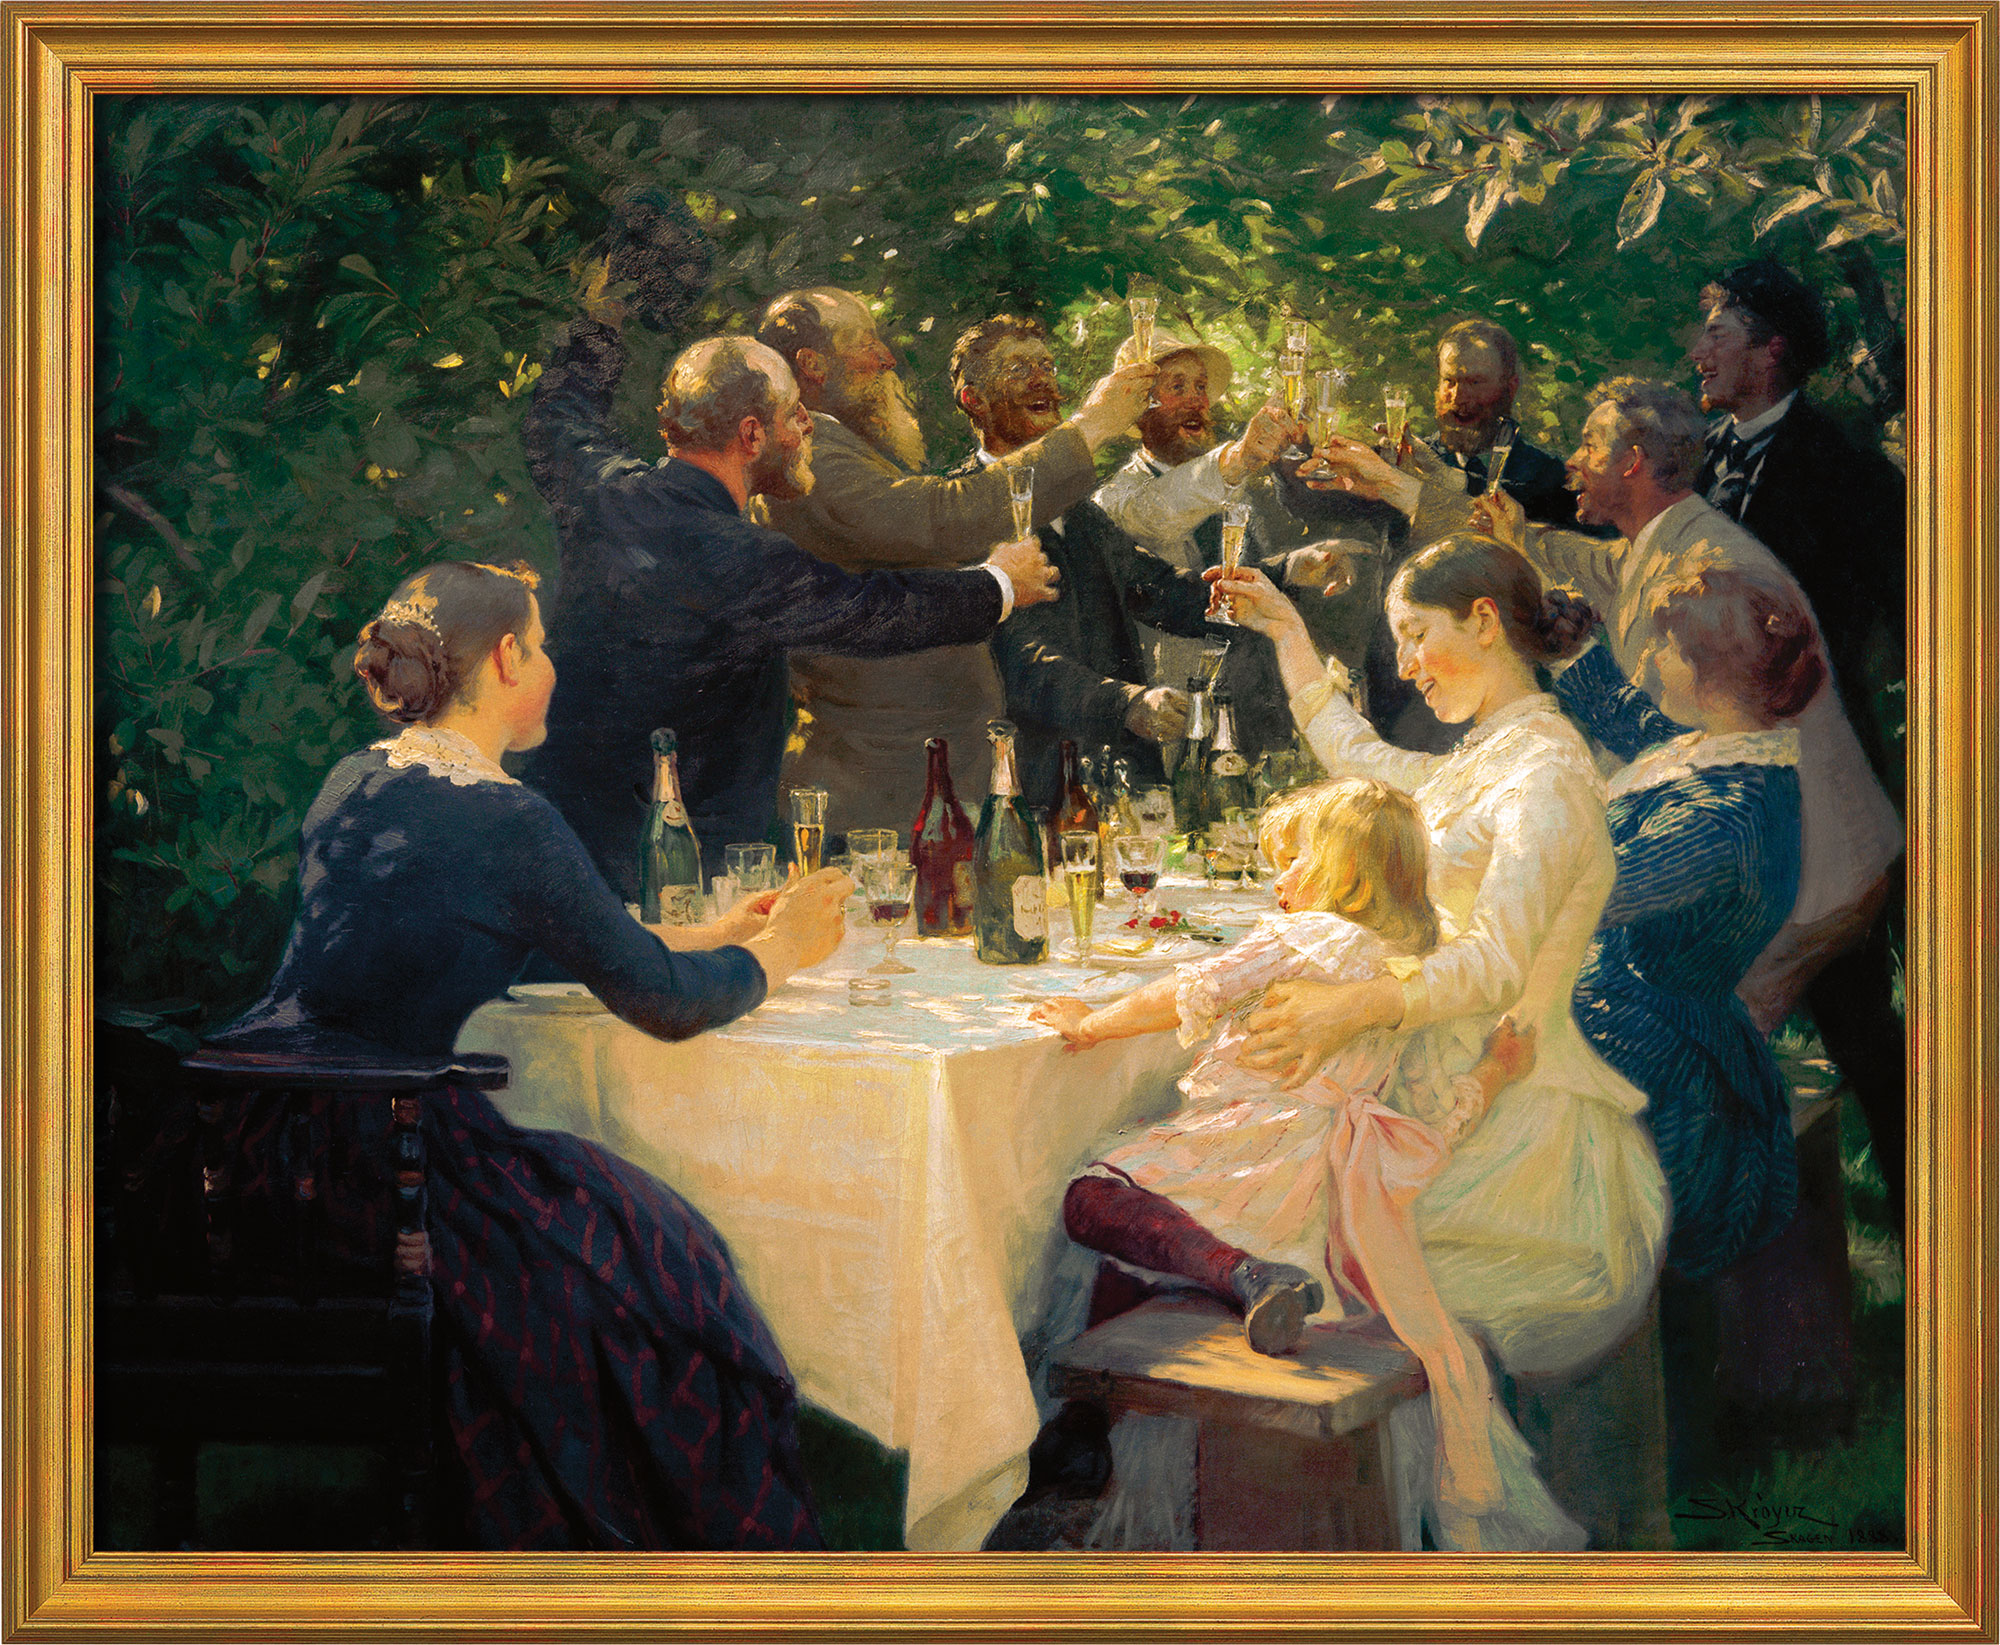 Bild "Künstlerfest bei M. und A. Ancher" (1888), gerahmt von Peder Severin Kroyer